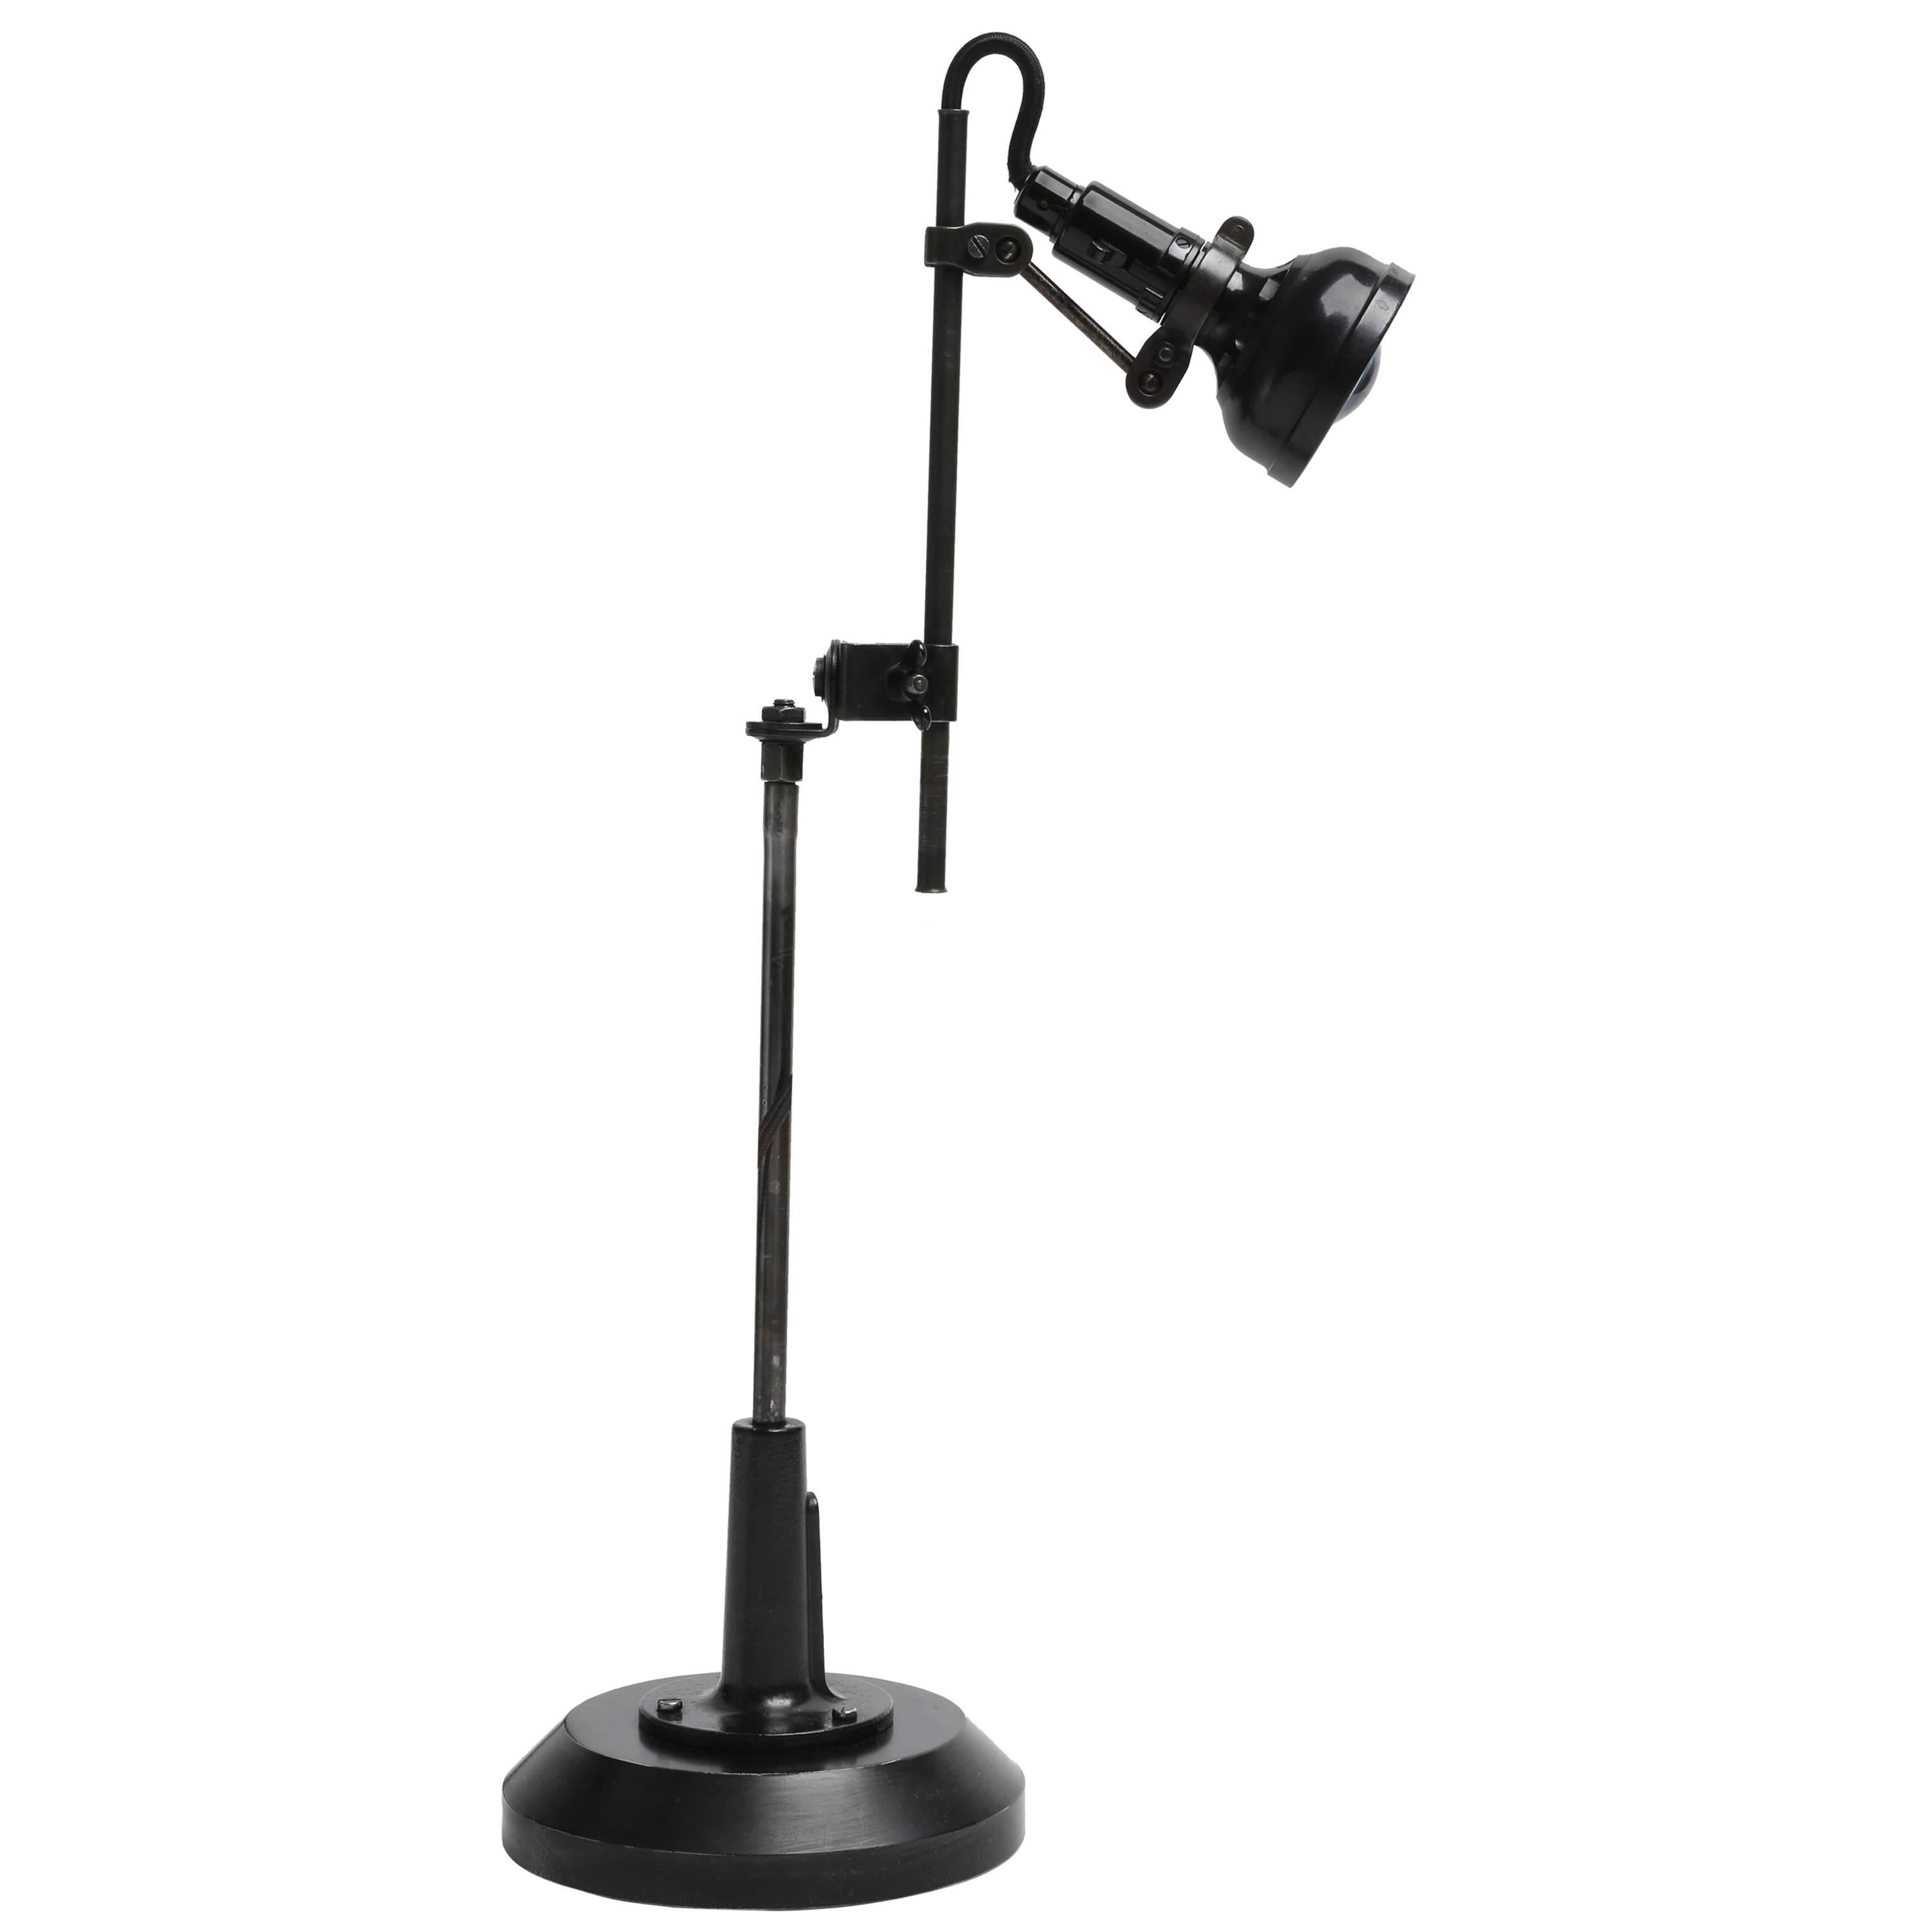 Singer Table Task Lamp